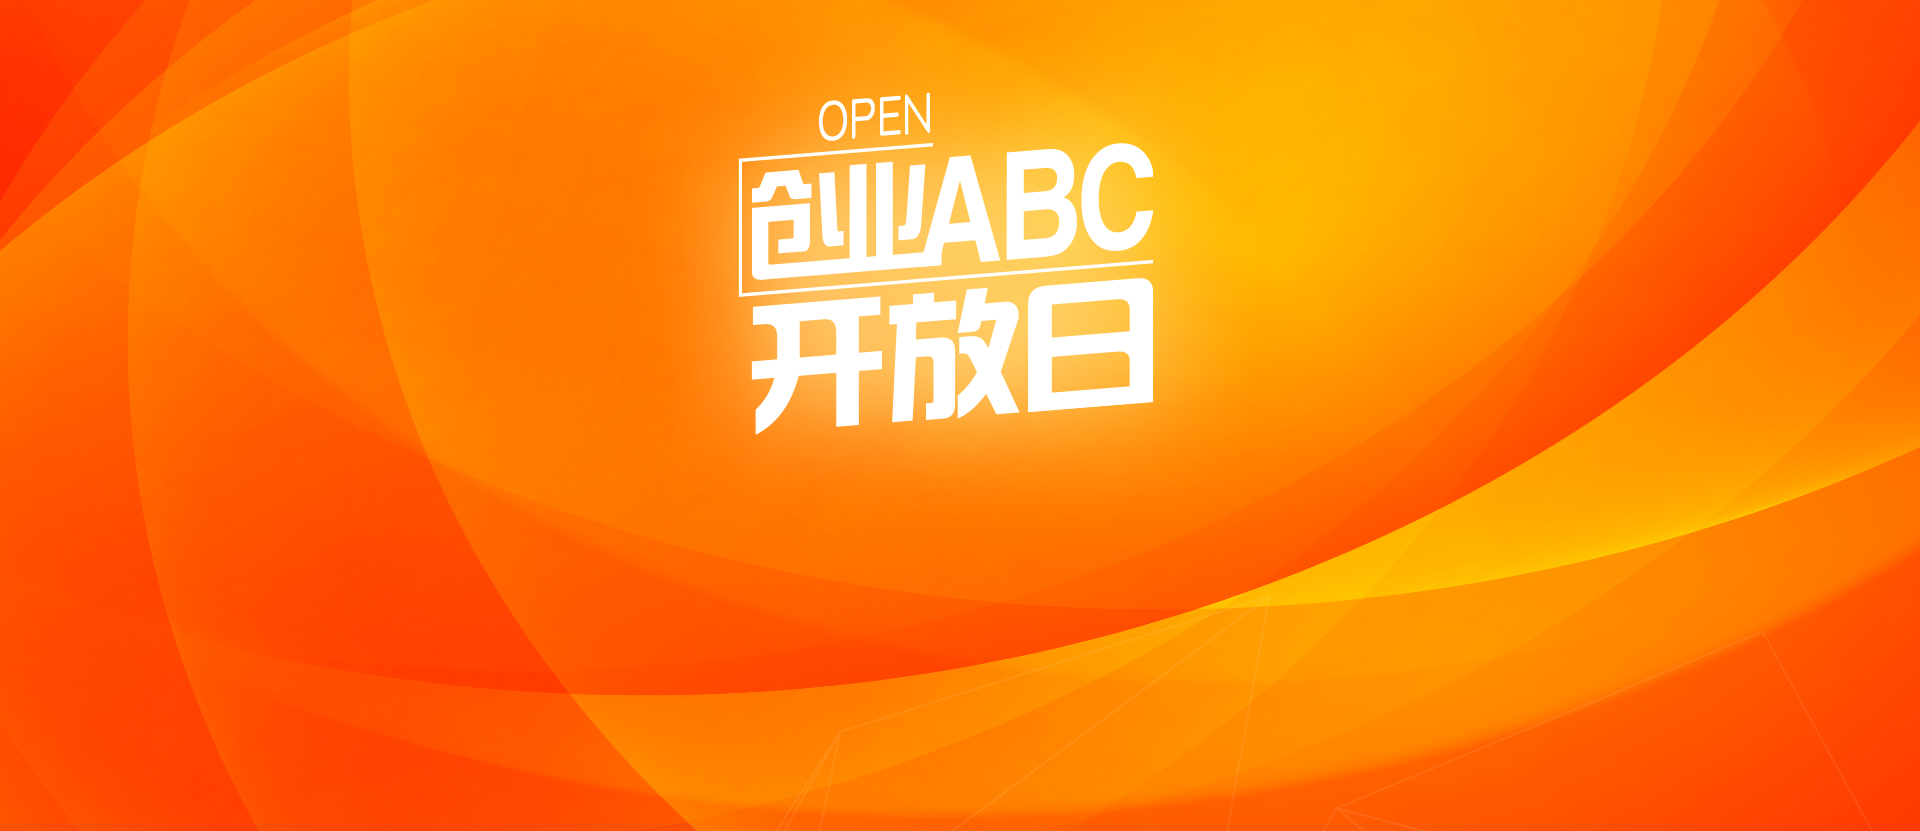 创业ABC137期开放日 - 创业ABC开放日 - 创业活动 - 创业工坊